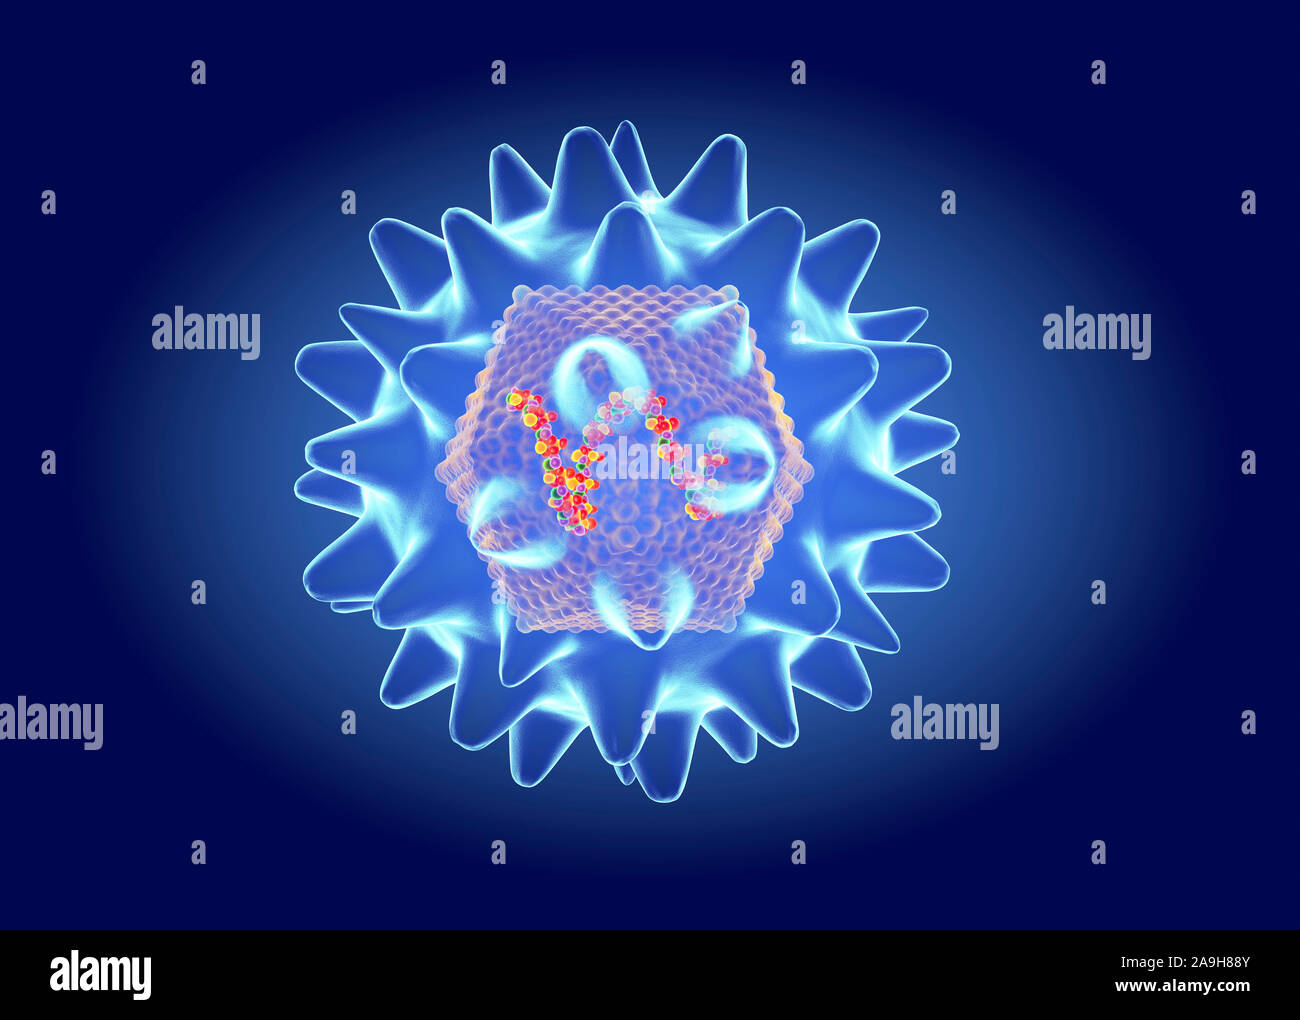 Hanta virus structure, illustration Stock Photo